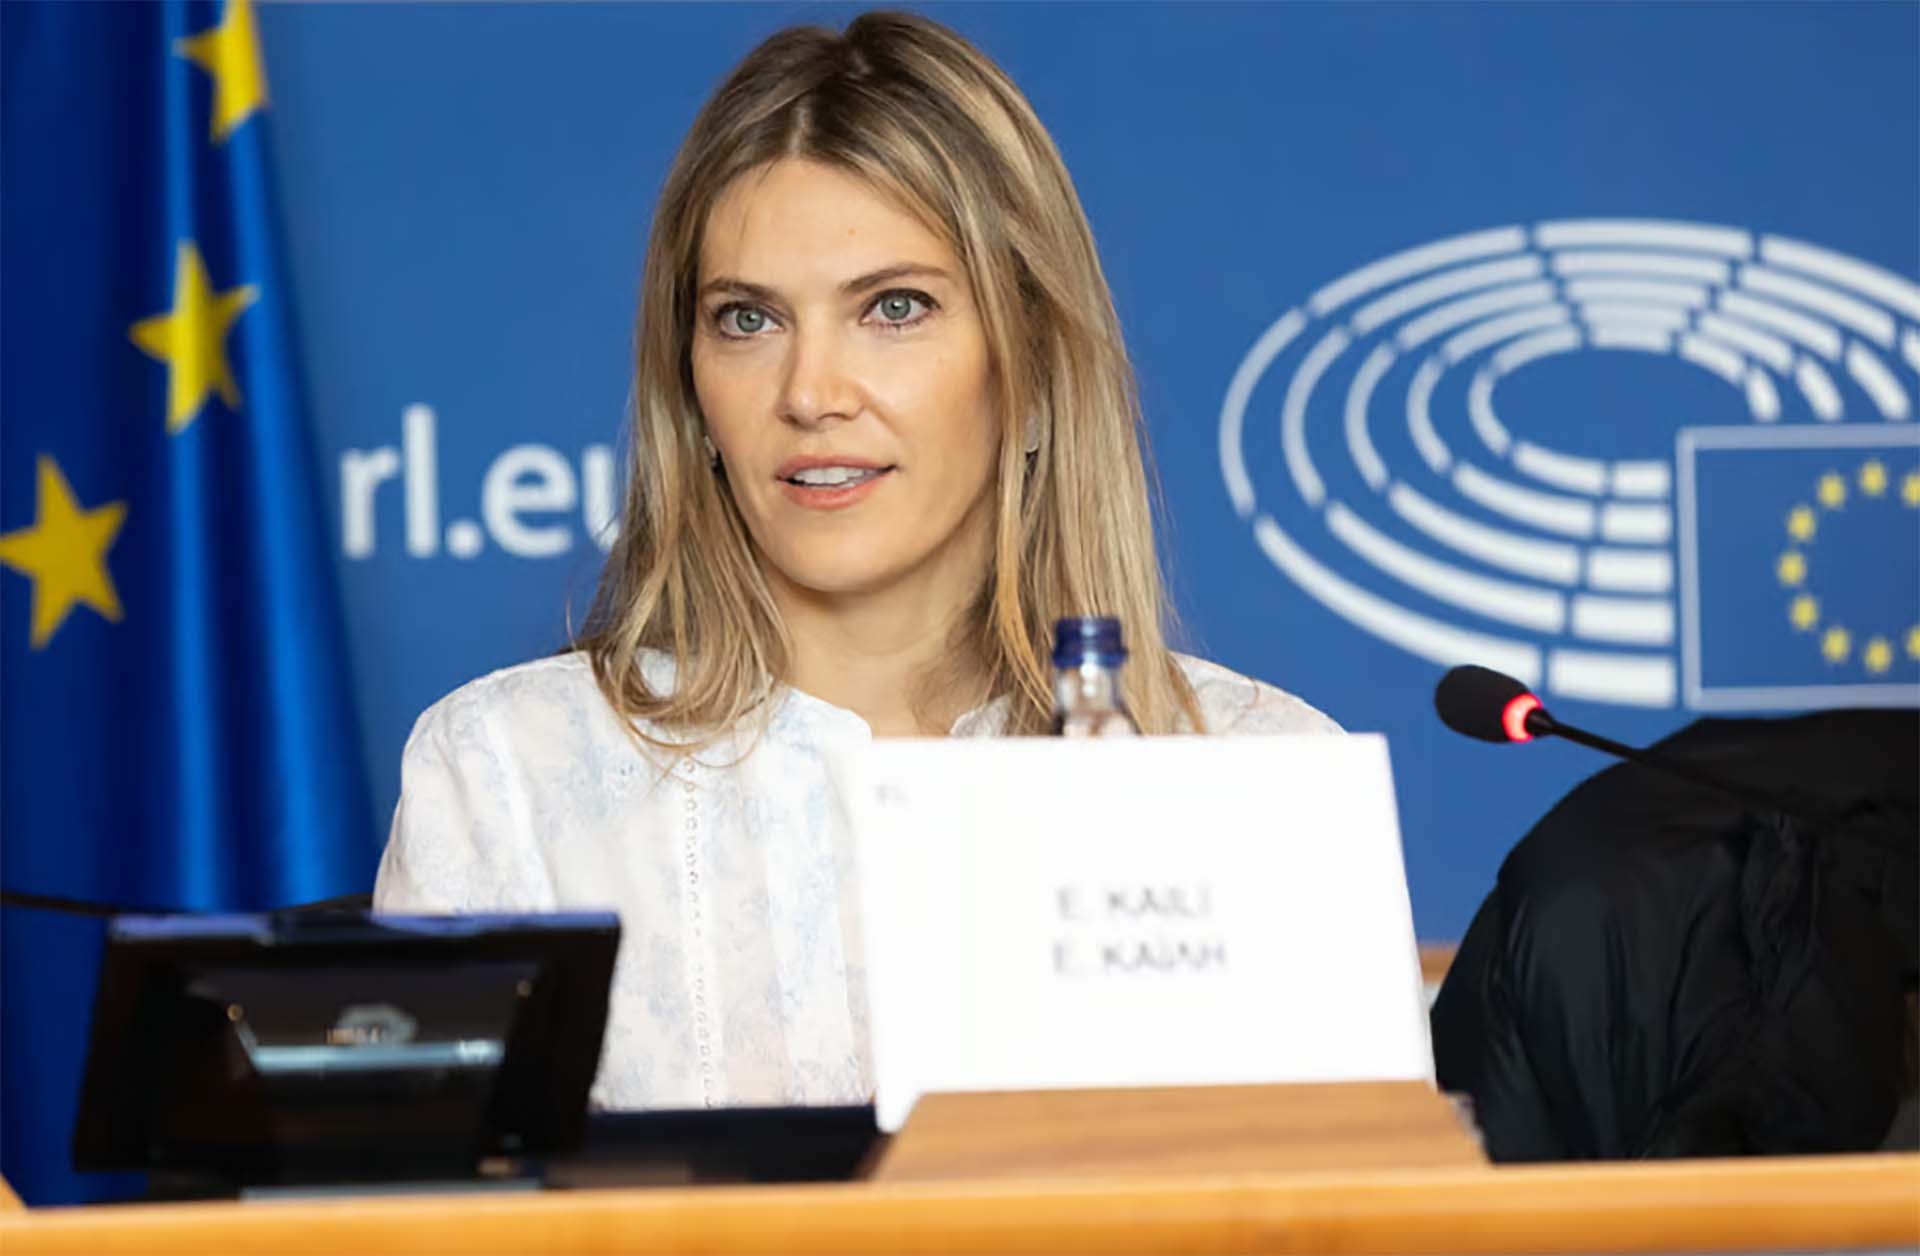 Bà Eva Kaili đã bị đình chỉ chức vụ Phó Chủ tịch Nghị viện châu Âu.(Nguồn: Politico)